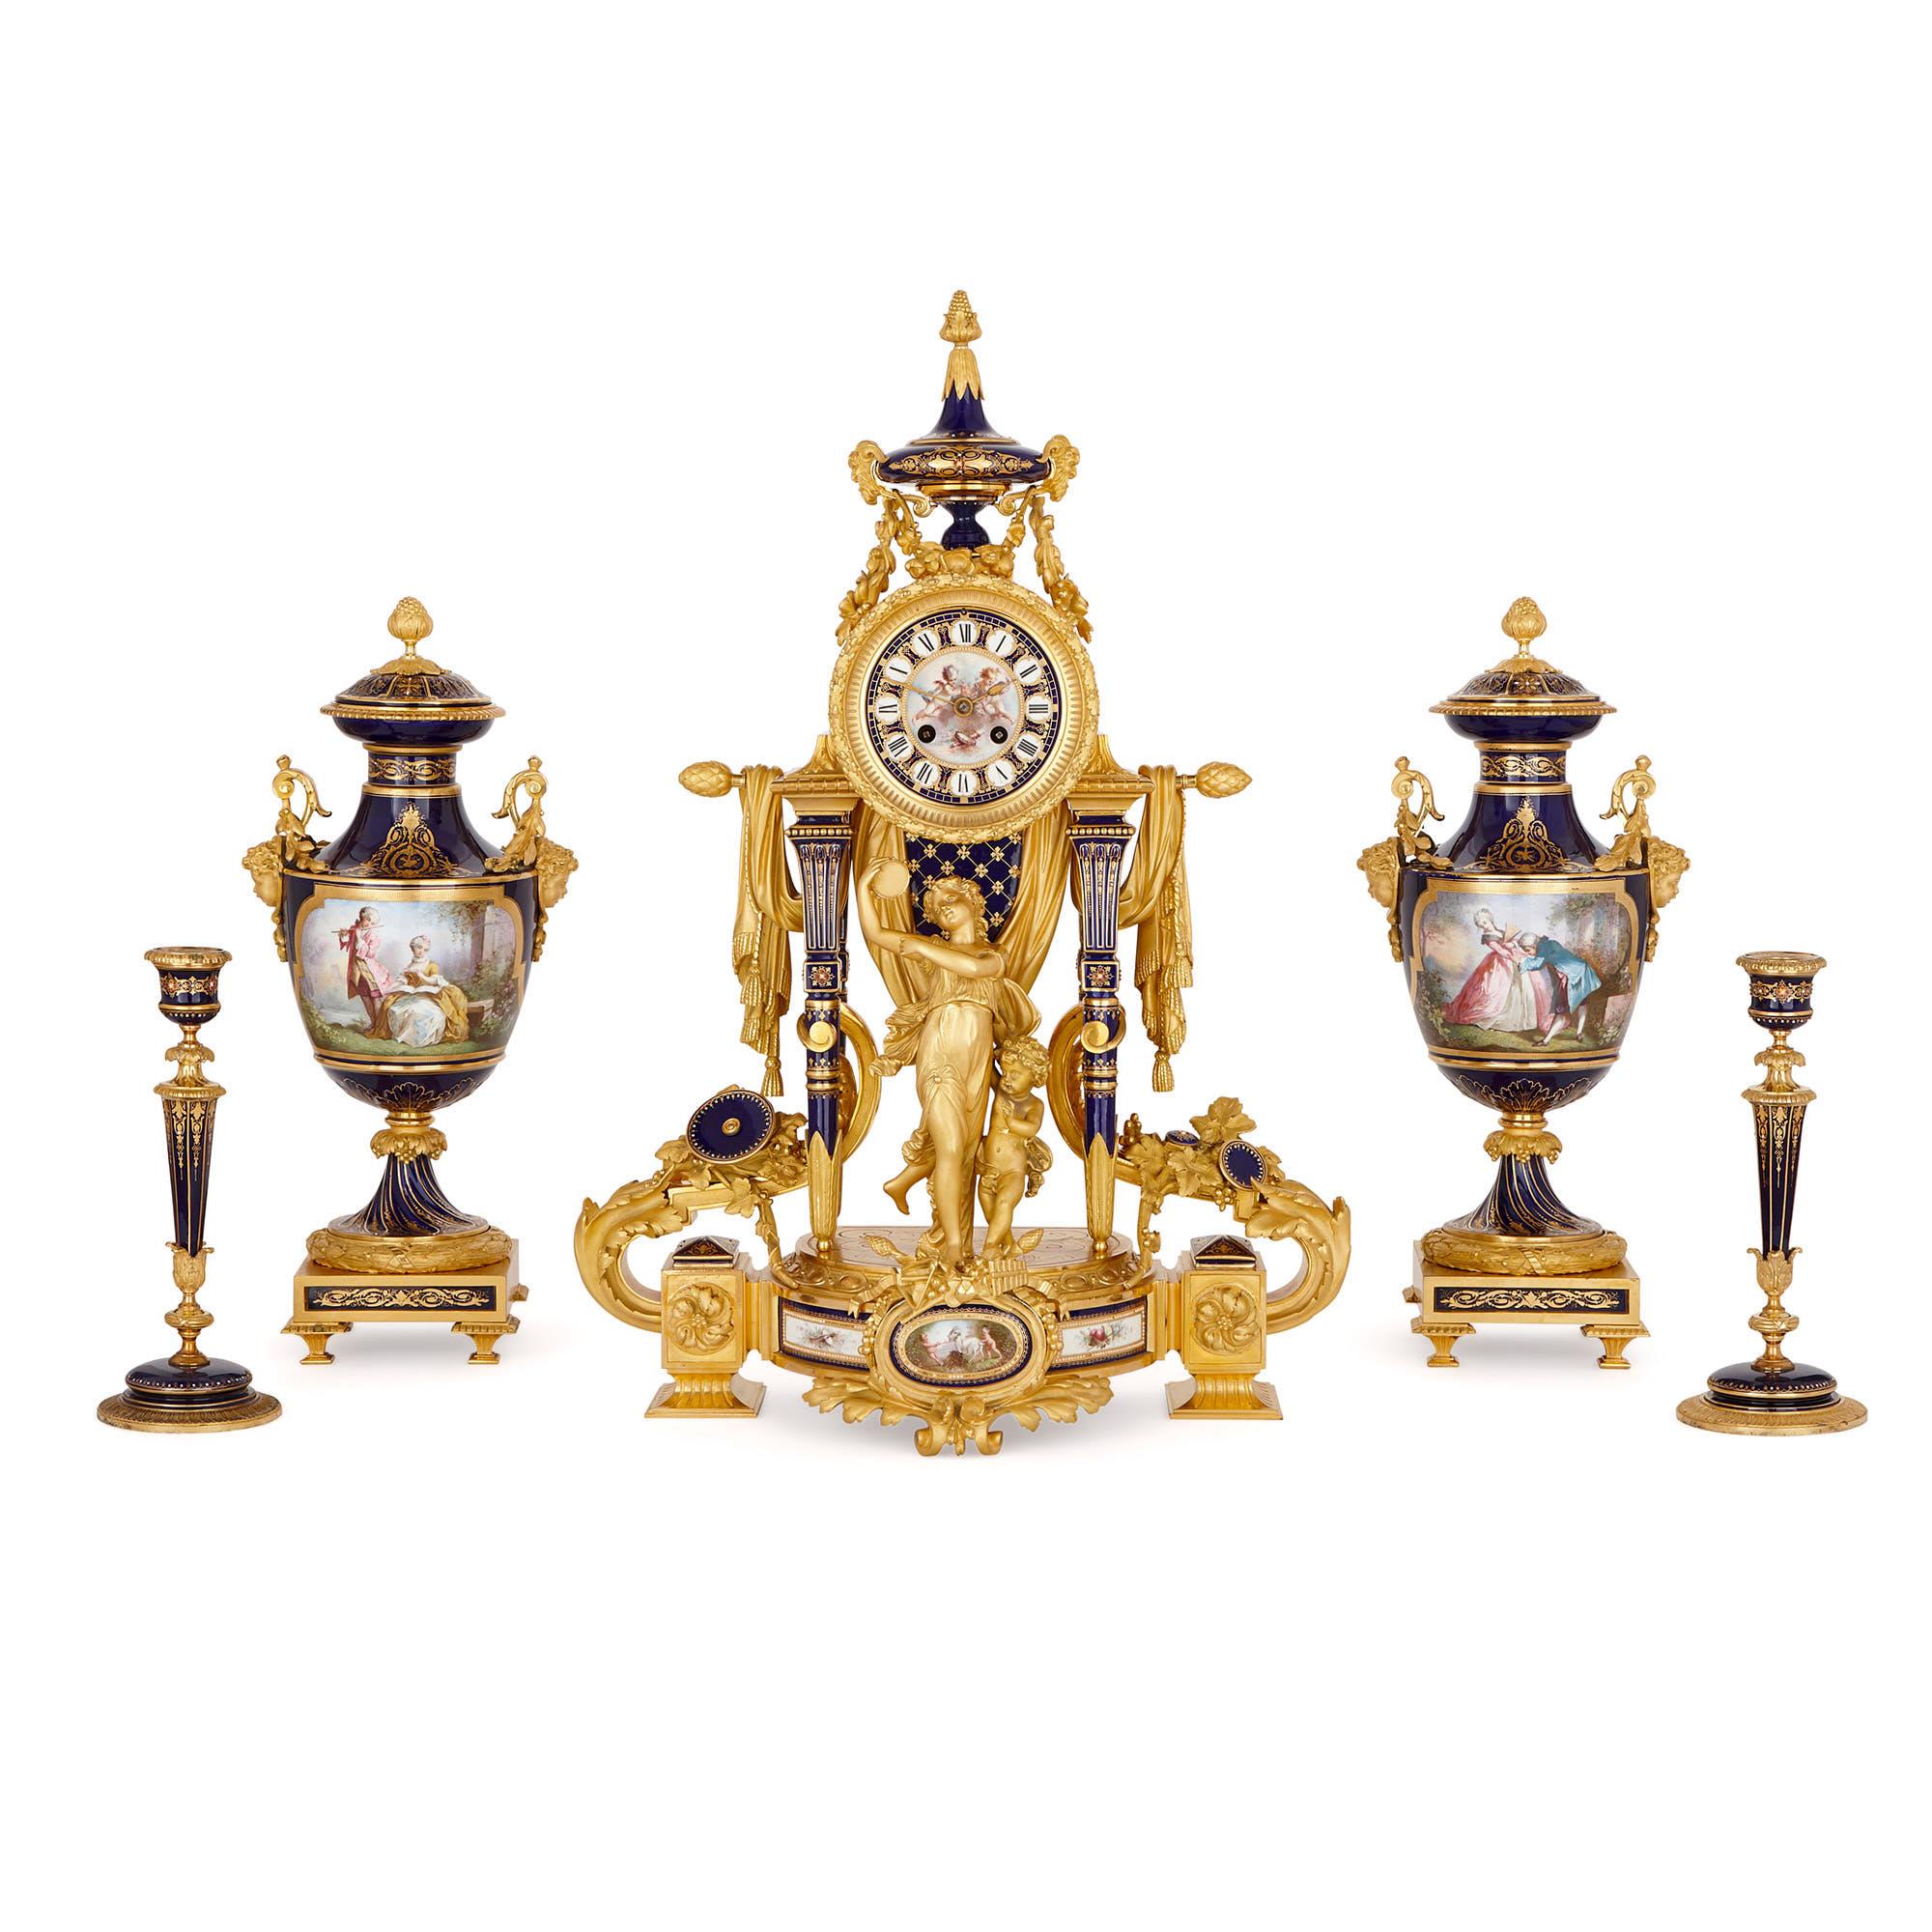 Ce magnifique set d'horloges de cinq pièces est conçu dans le style de la porcelaine du XVIIIe siècle produite par la célèbre manufacture de Sèvres, en France. L'ensemble se compose d'une horloge de cheminée, d'une paire de vases adjacents - qui se